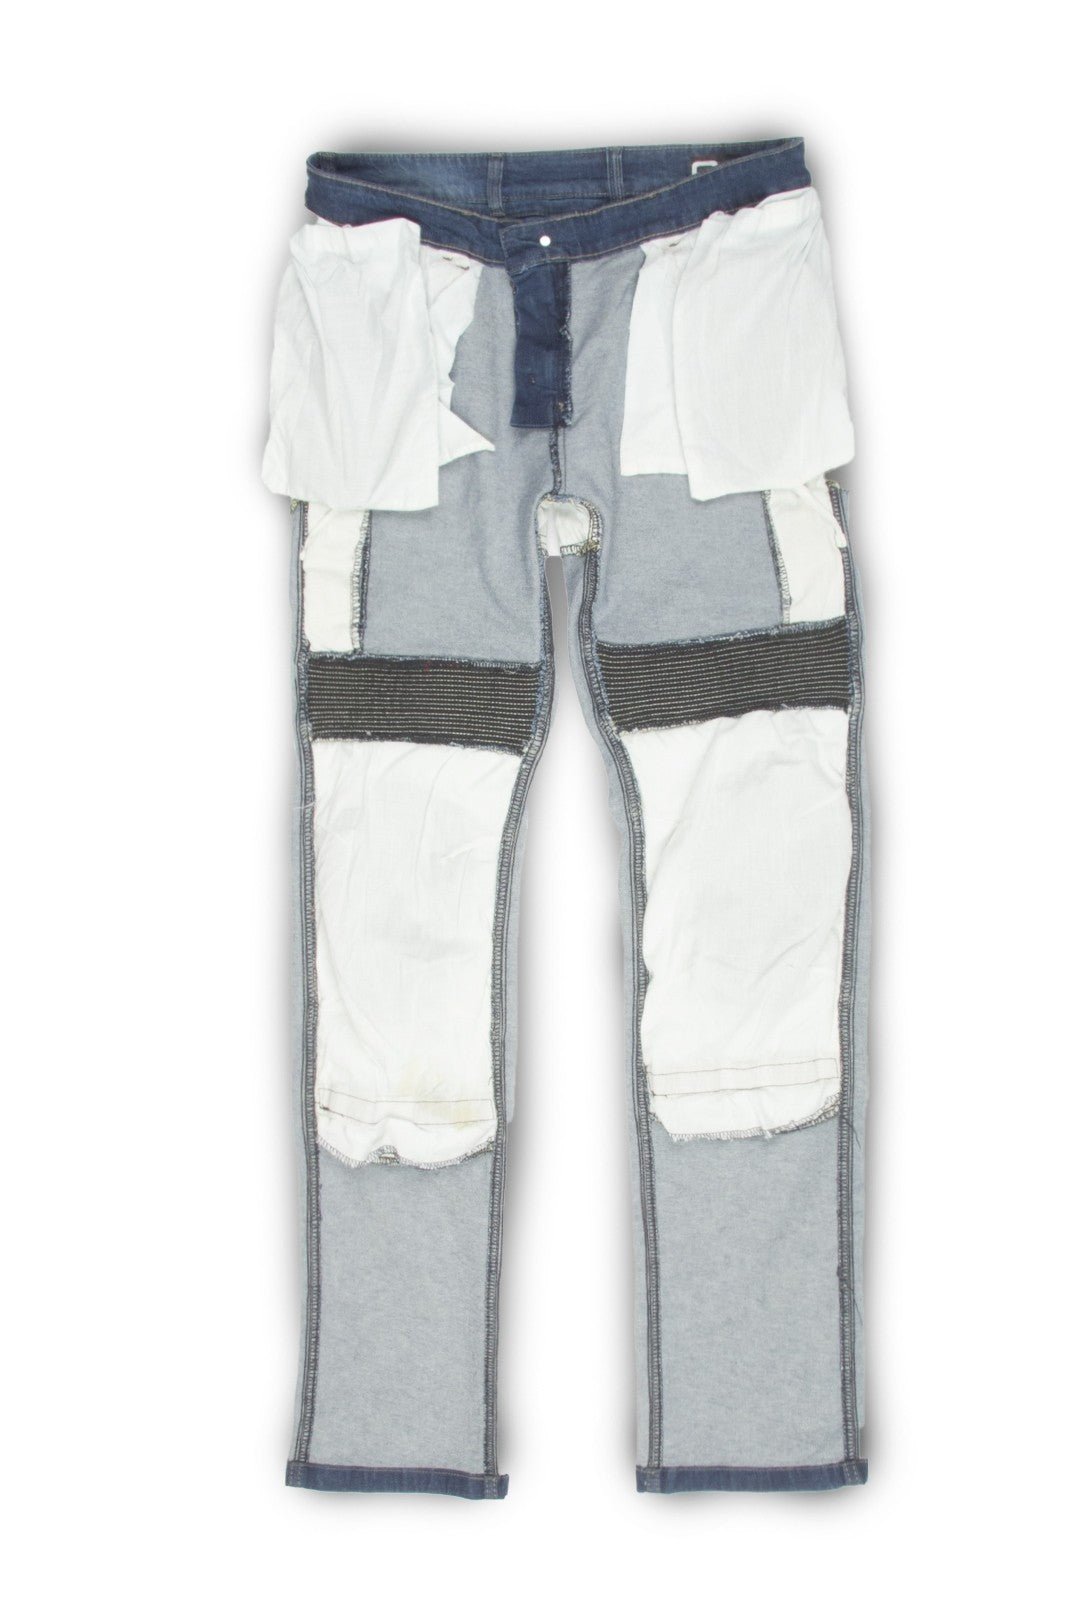 Jeans moto OJ UPGRADE donna estivi e ventilati con protezioni - OnTheRoad.shop - OJ